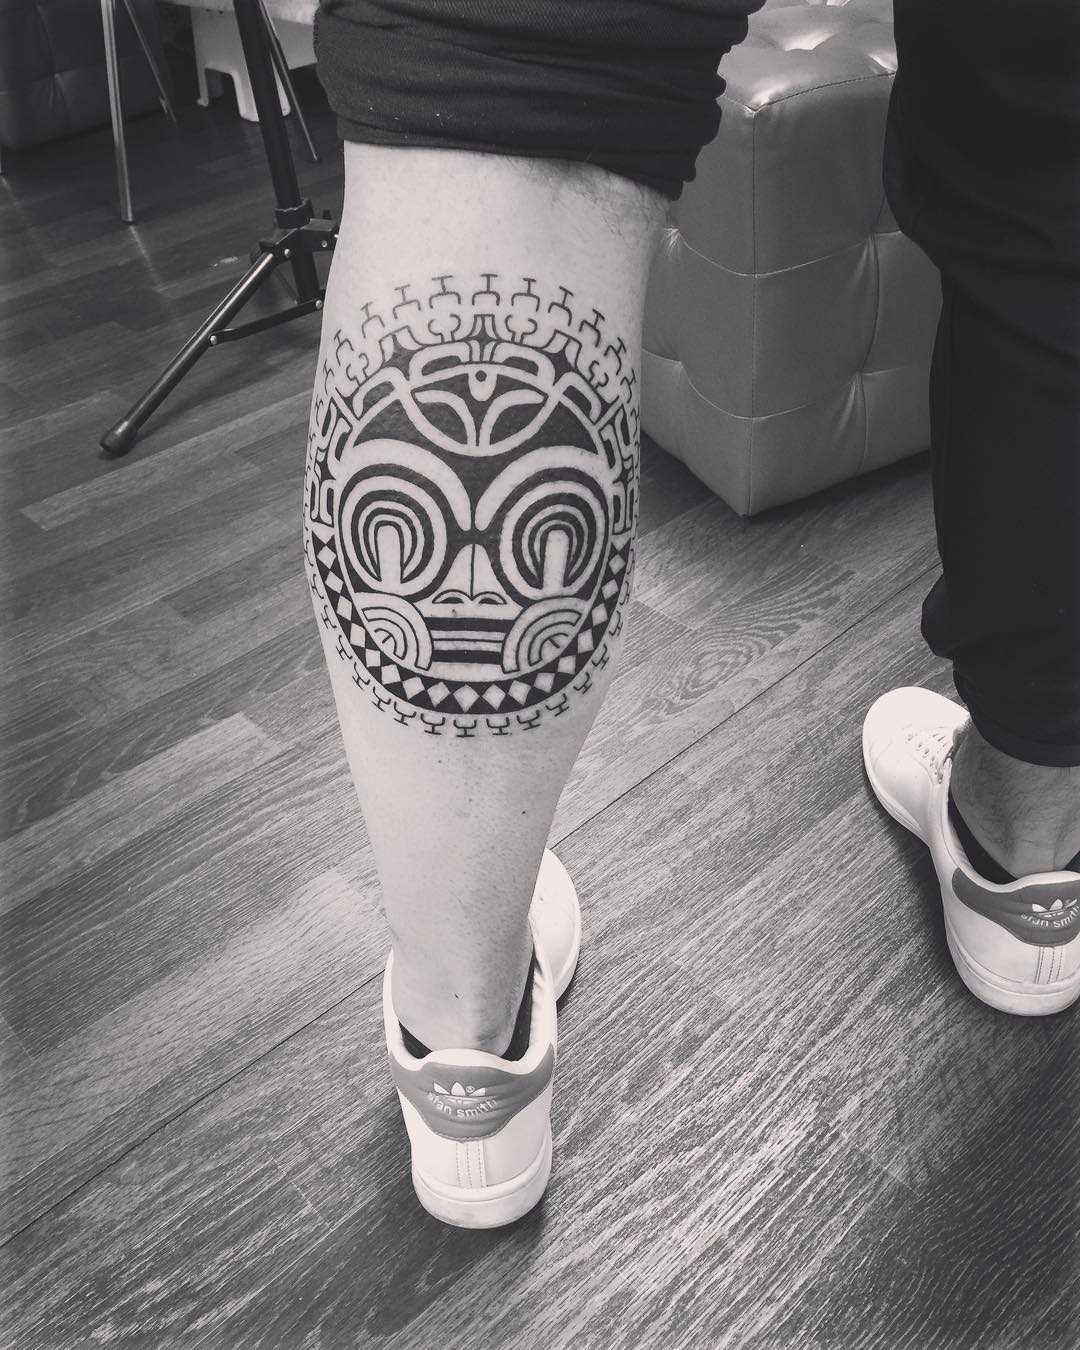 Foto da tatuagem em estilo polinésia sobre a perna de um cara